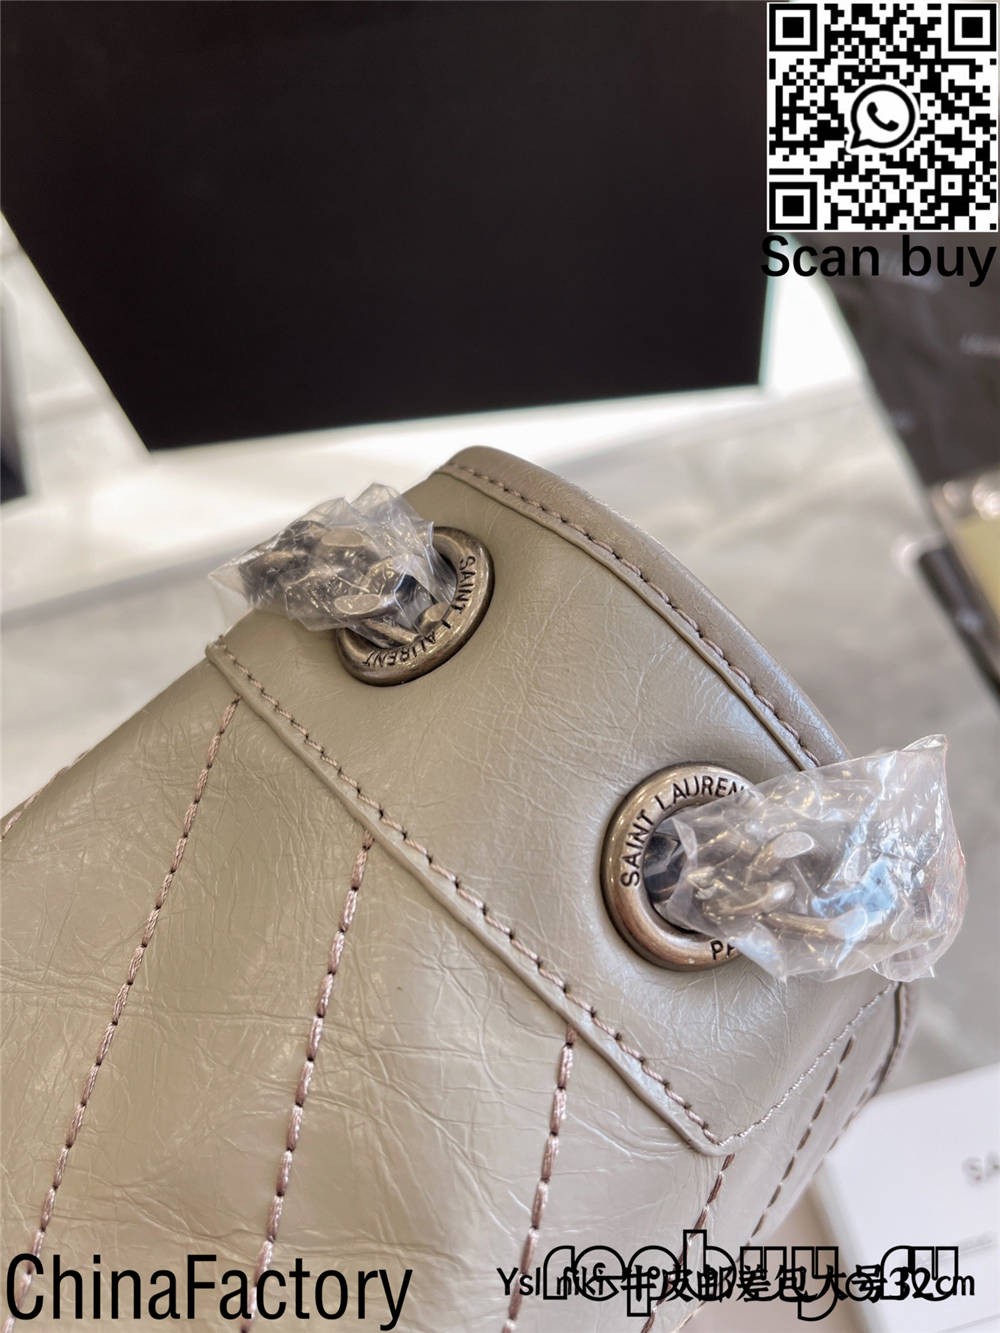 12 найкращих копій сумок YSL, які можна купити (оновлено в 2022 році) – Інтернет-магазин підробленої сумки Louis Vuitton найкращої якості, дизайнерська копія сумки ru